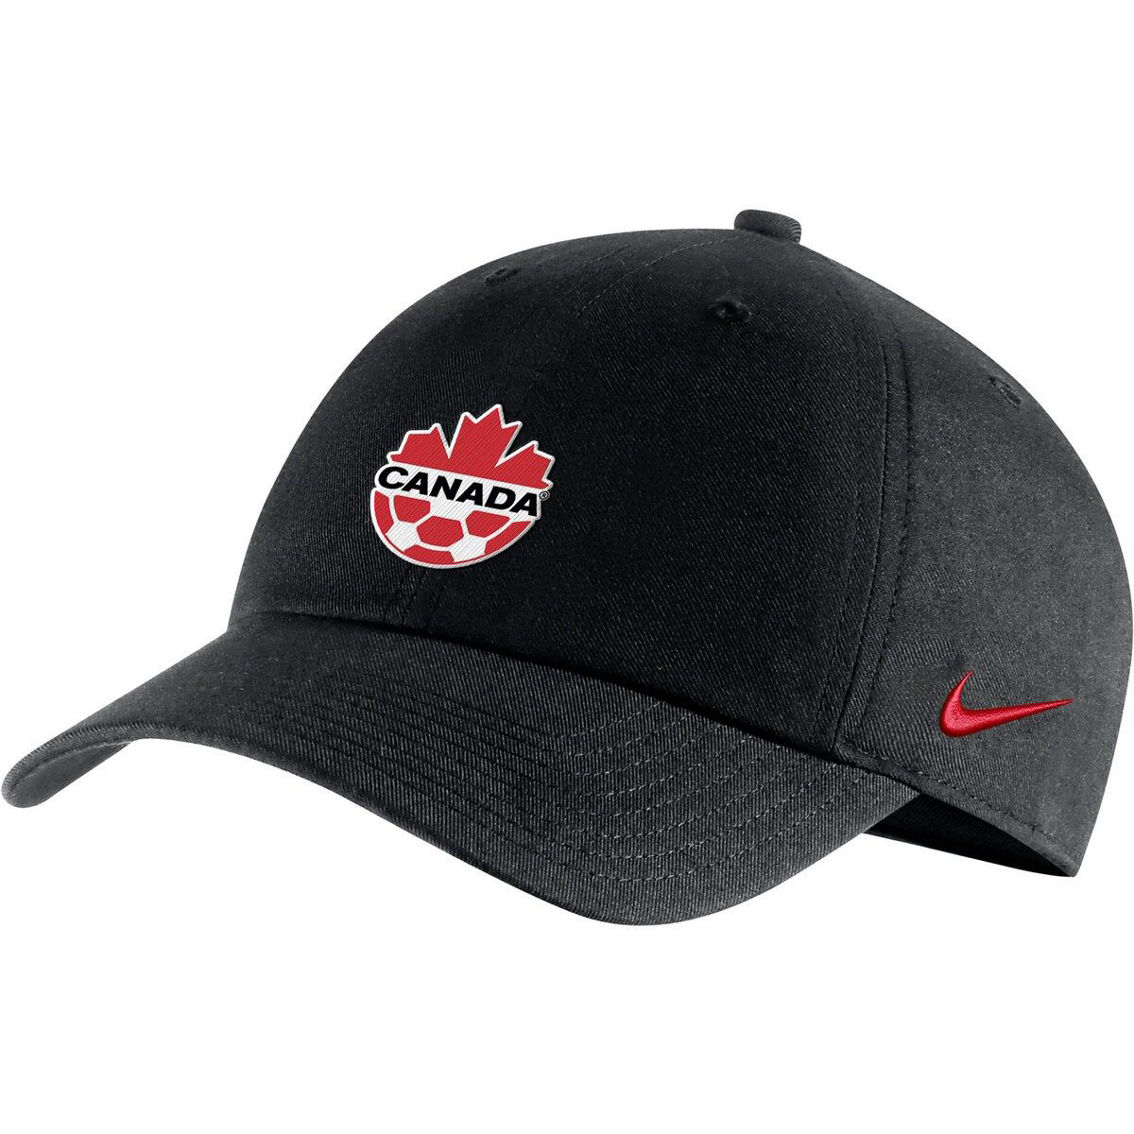 Nike Men's Black Canada Soccer Campus Adjustable Hat - Image 2 of 3